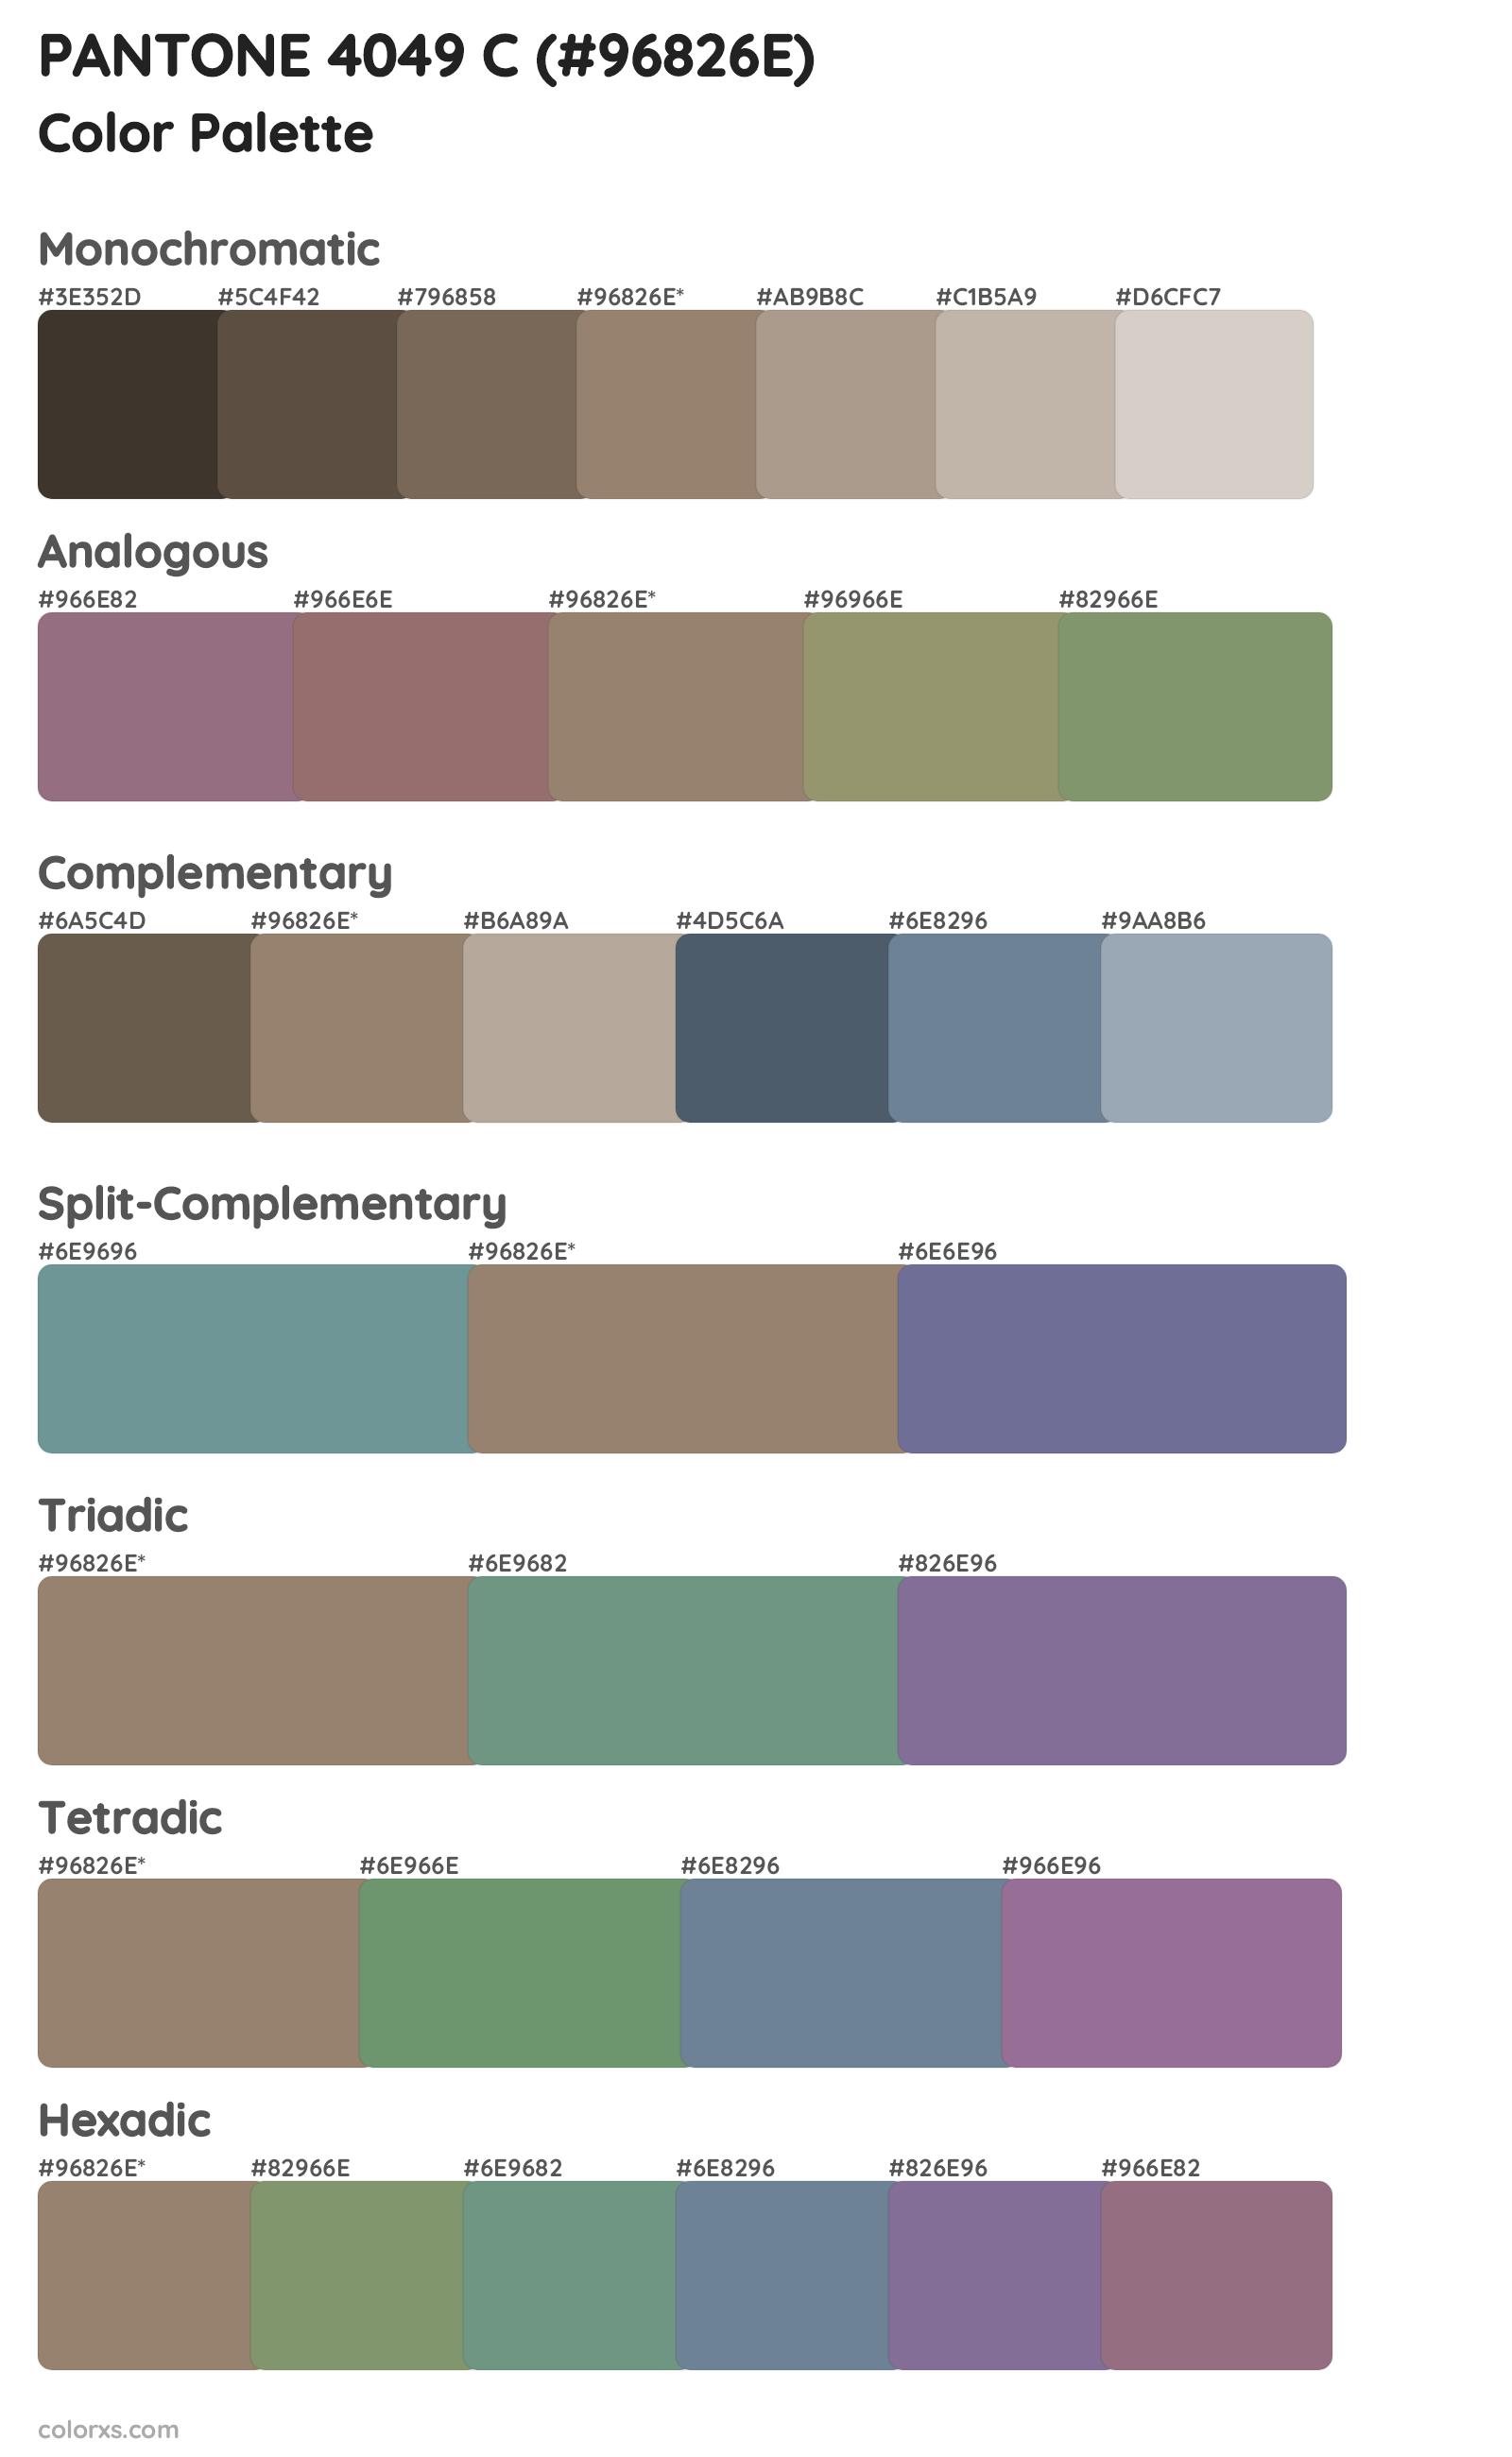 PANTONE 4049 C Color Scheme Palettes